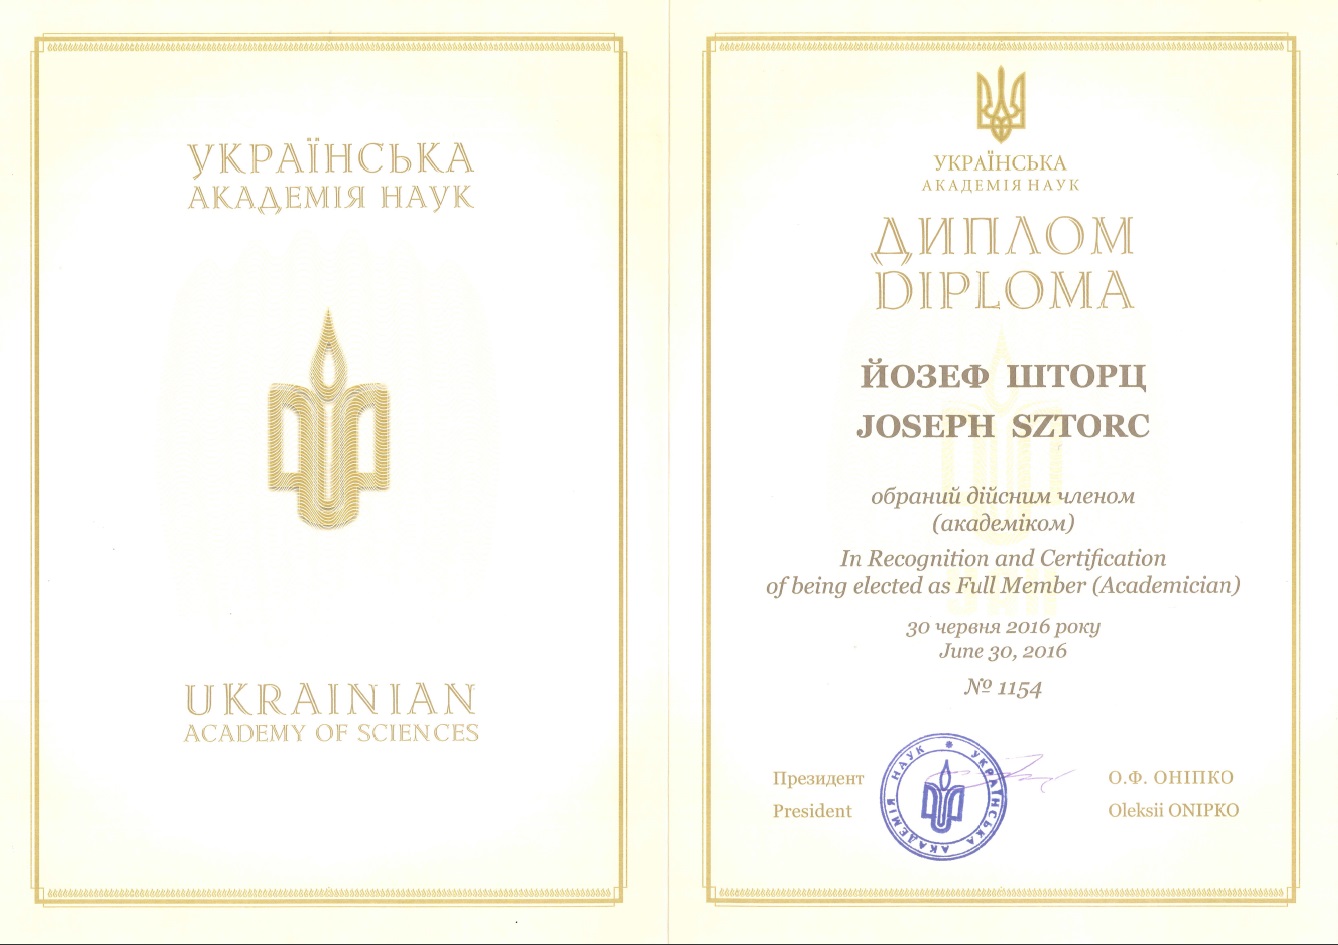 Dyplom akademika przyznany w Ukraińskiej Akademii Nauk w Kijowie